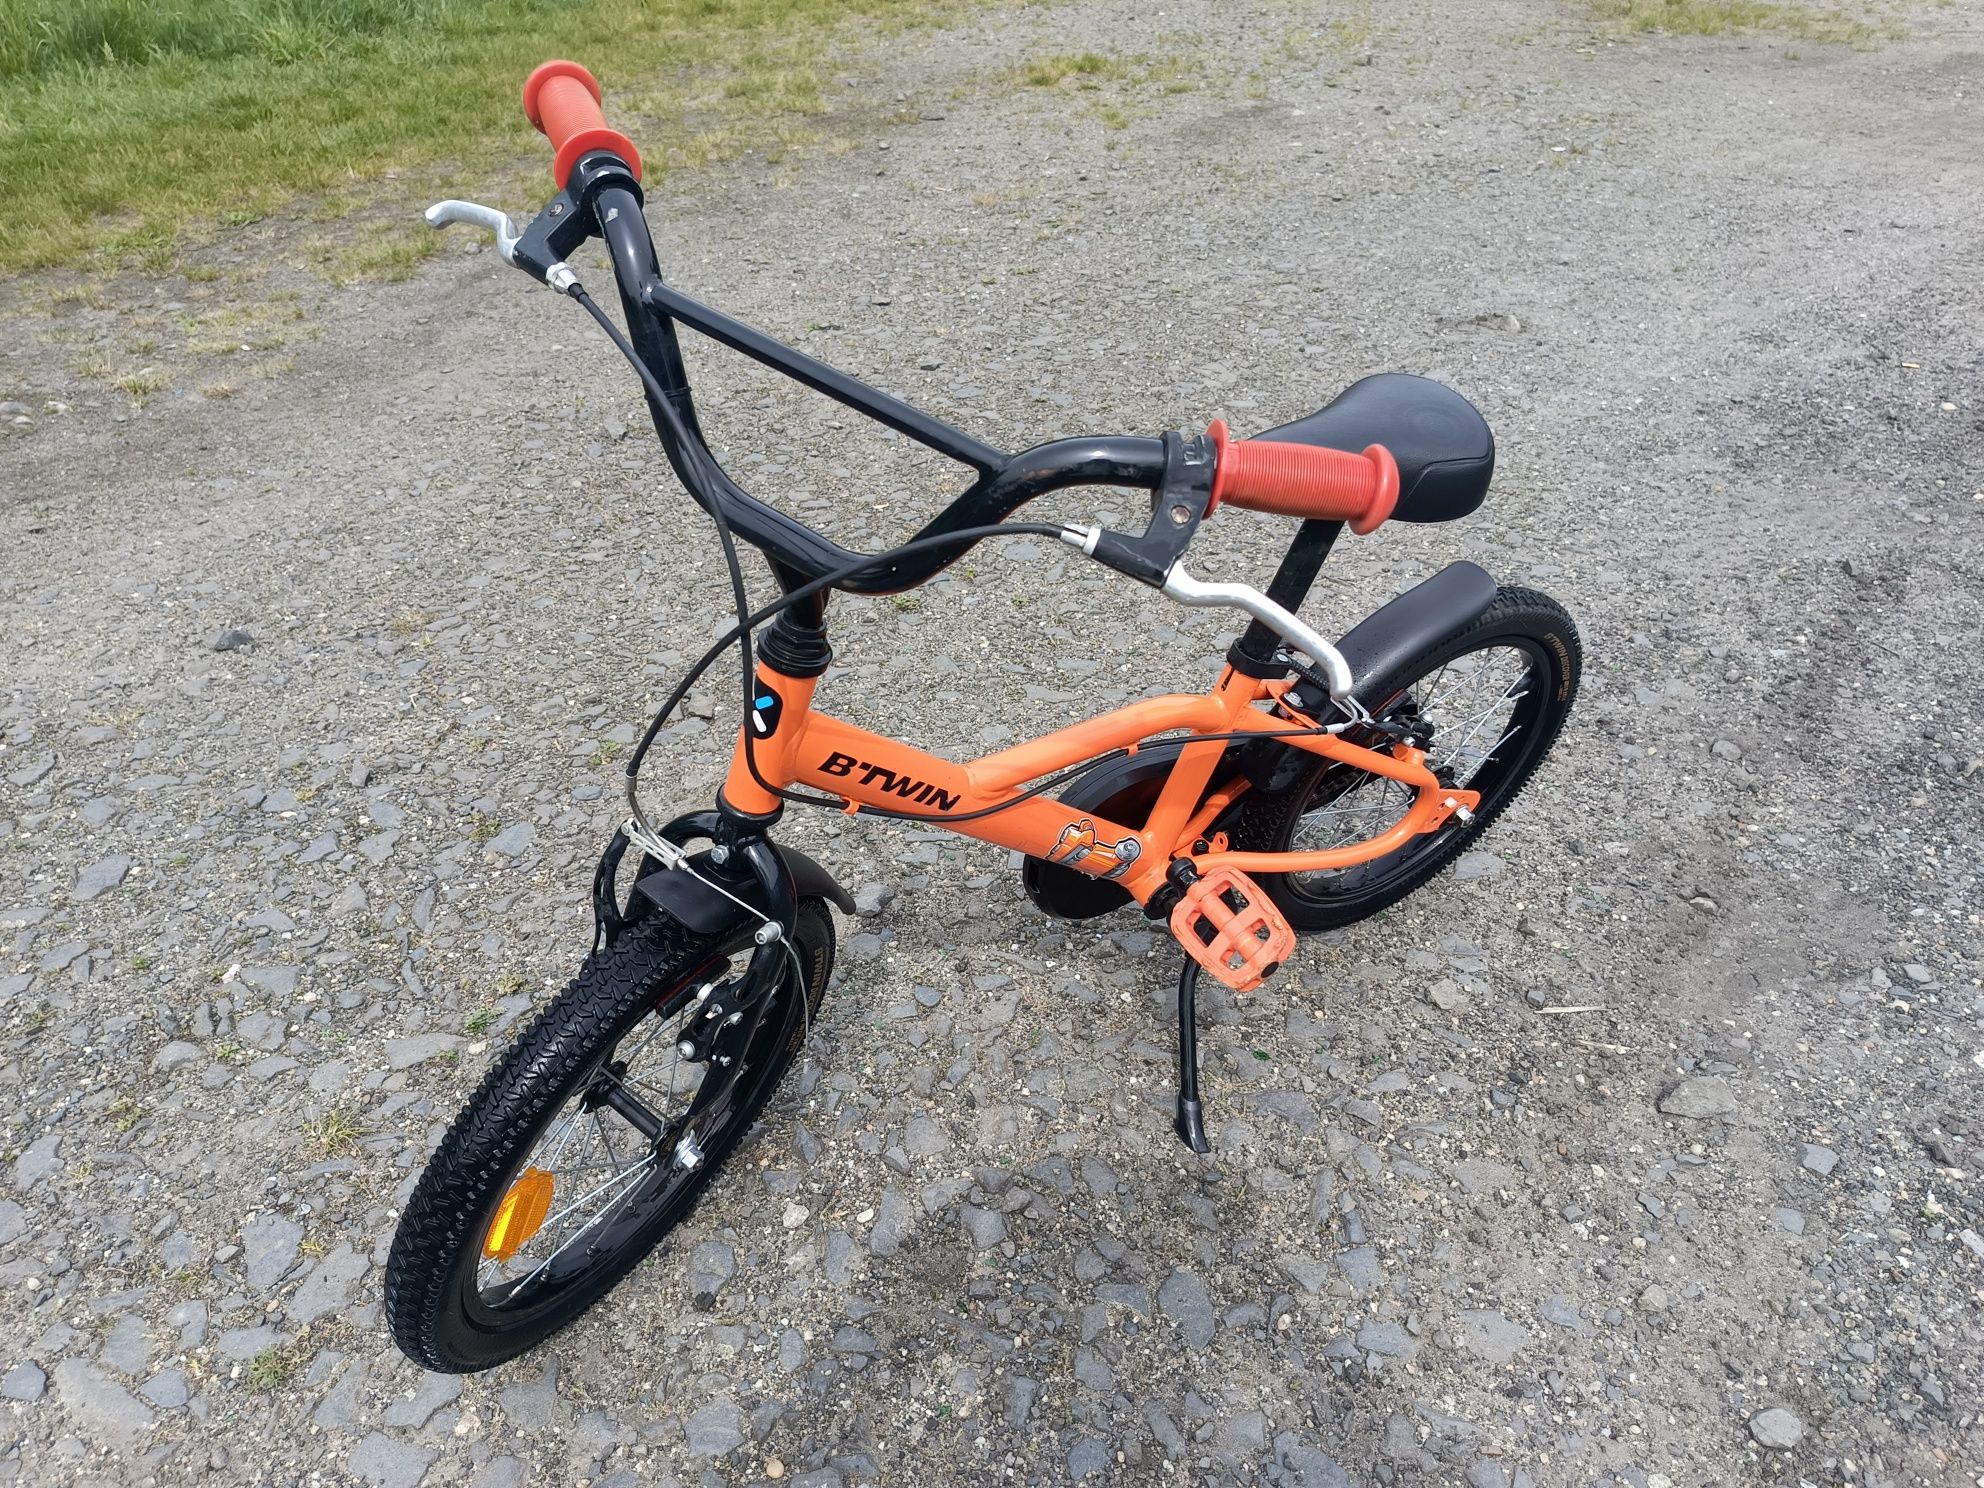 Rowerek rower dziecięcy B-Twin robot 500